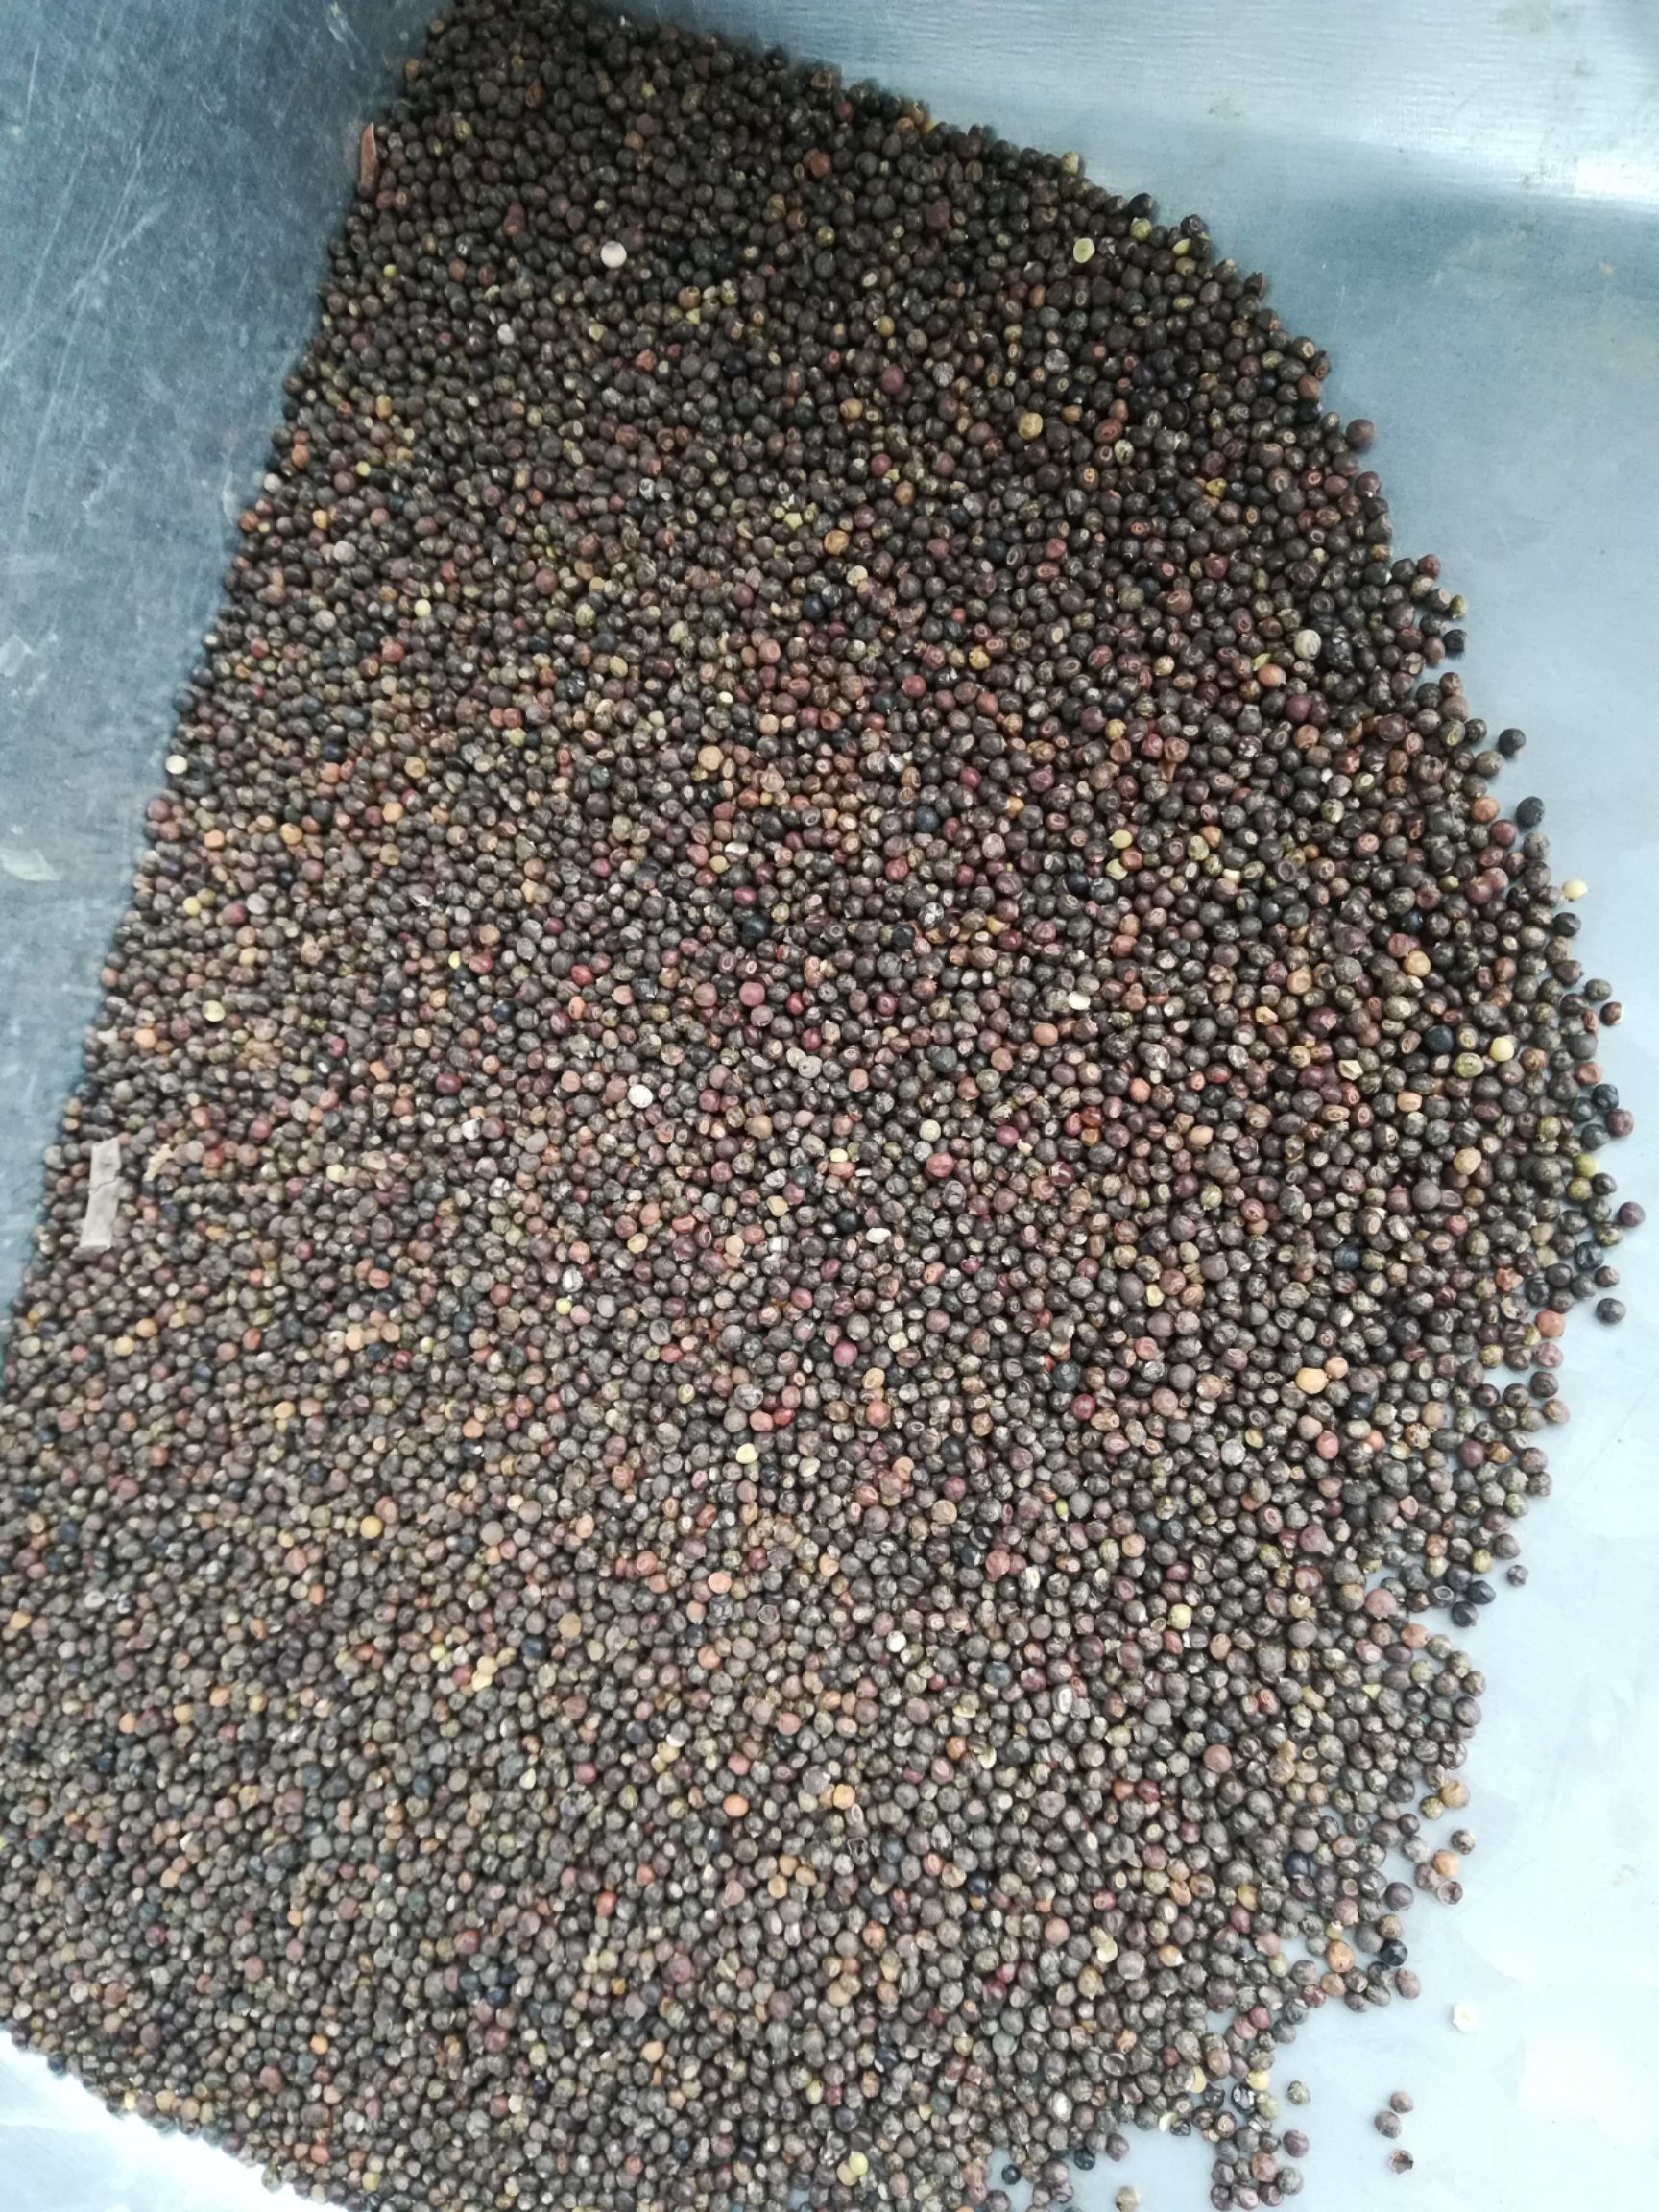 桂林千斤拔种子  小叶红皮千斤拔子   饱满发芽率高提供种植技术